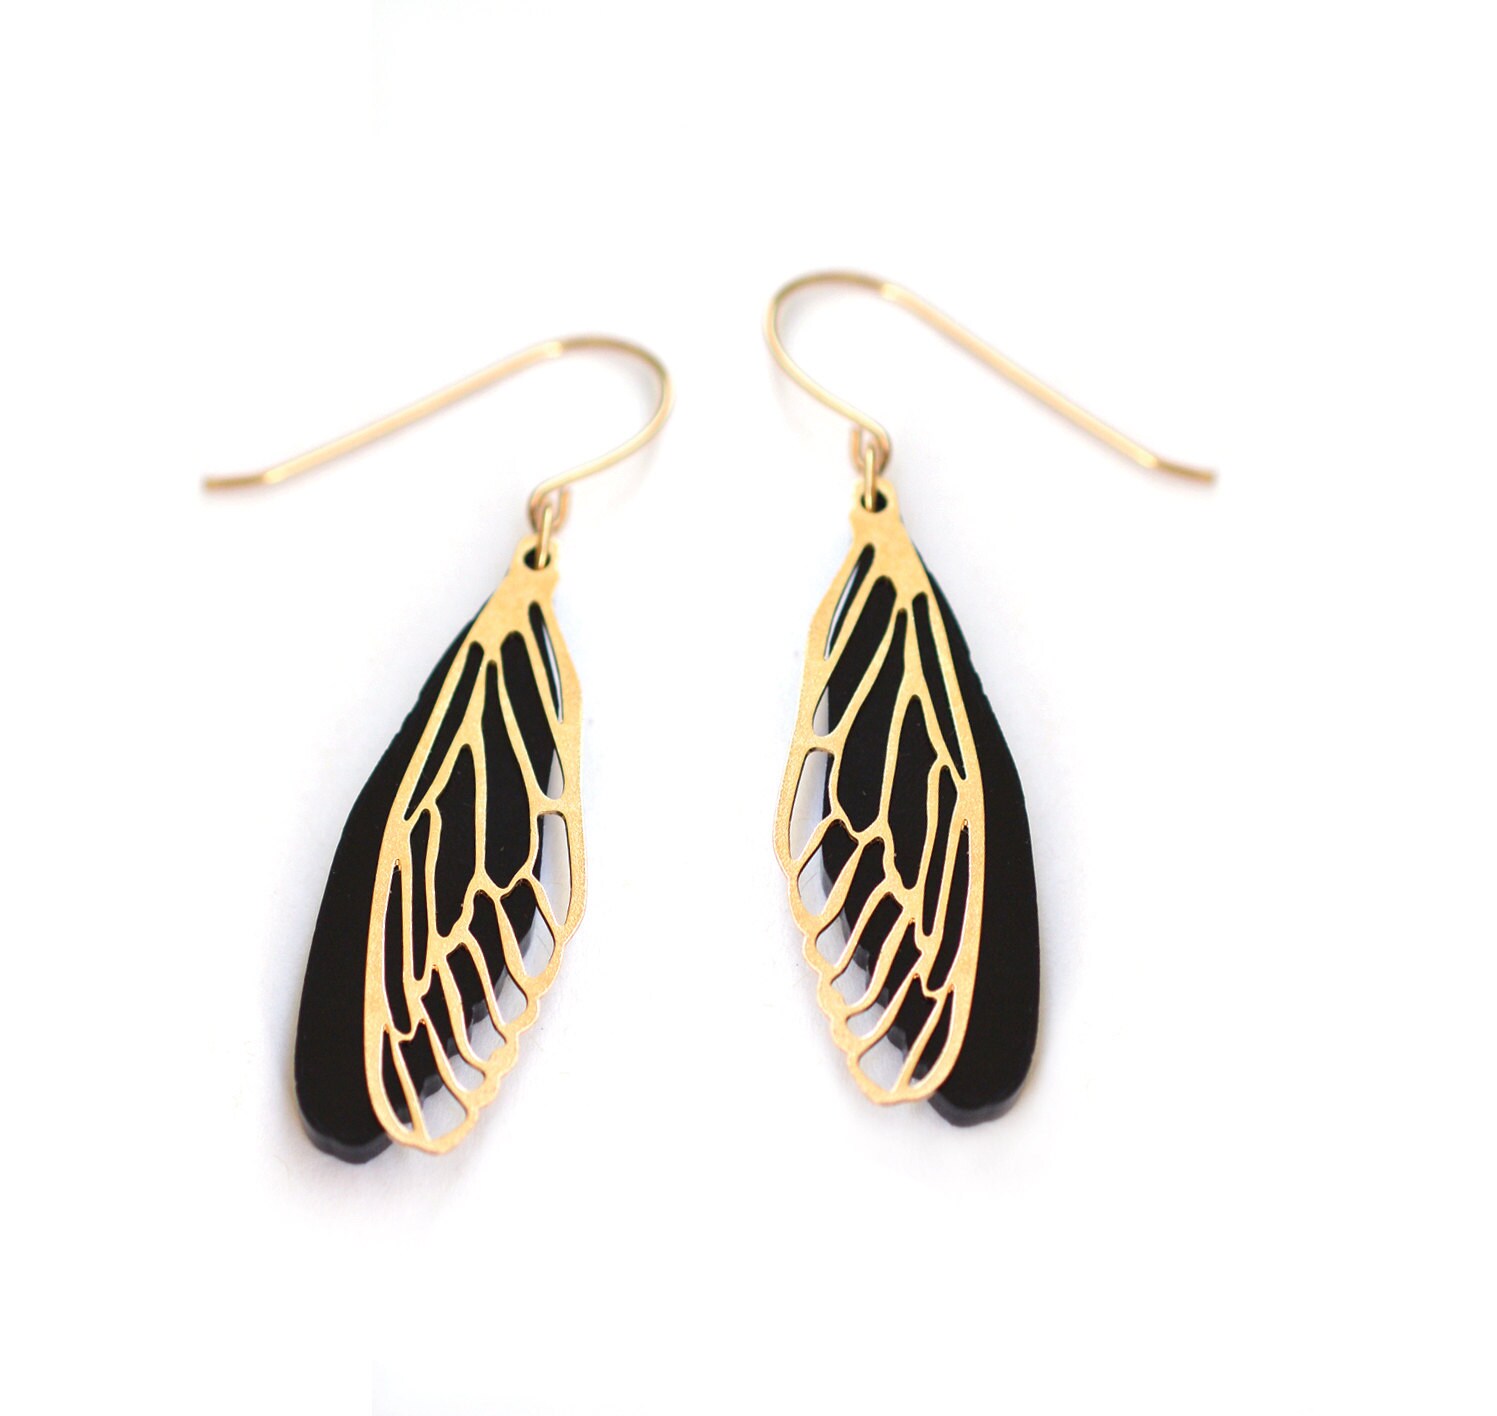 Statement earrings Dragonfly wing earrings Dangle earrings | Etsy